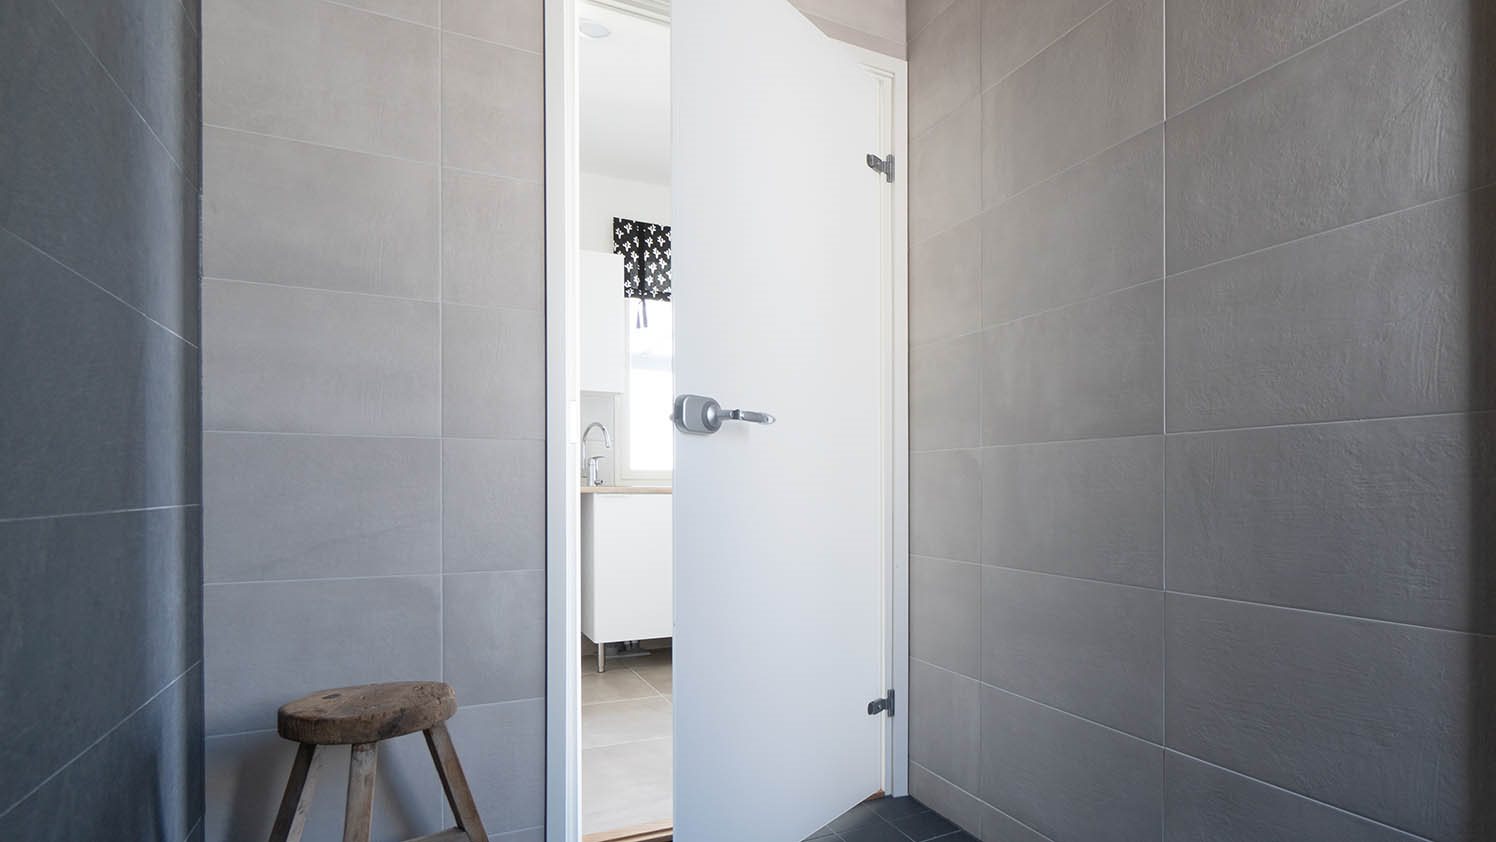 Kylpyhuoneenovet - valitse kaunis ja kestävä ovi kosteisiin tiloihin